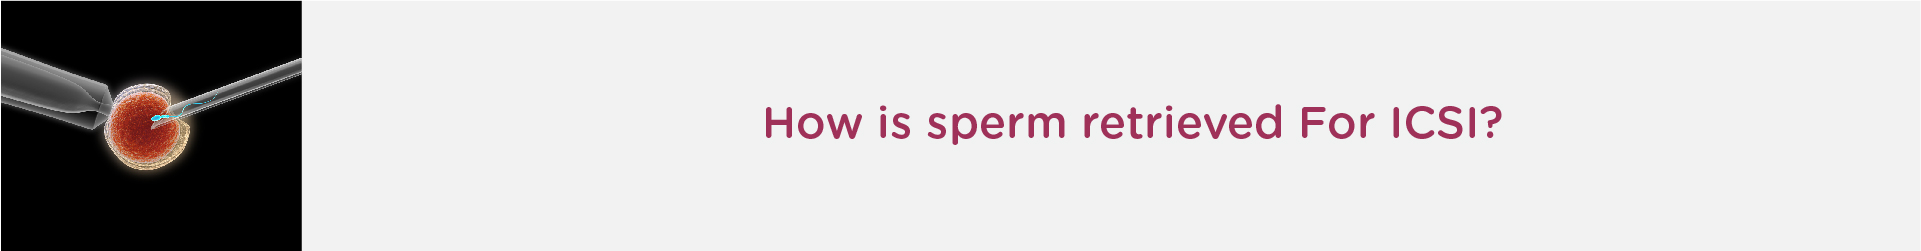 How Is Sperm Retrieved for ICSI?